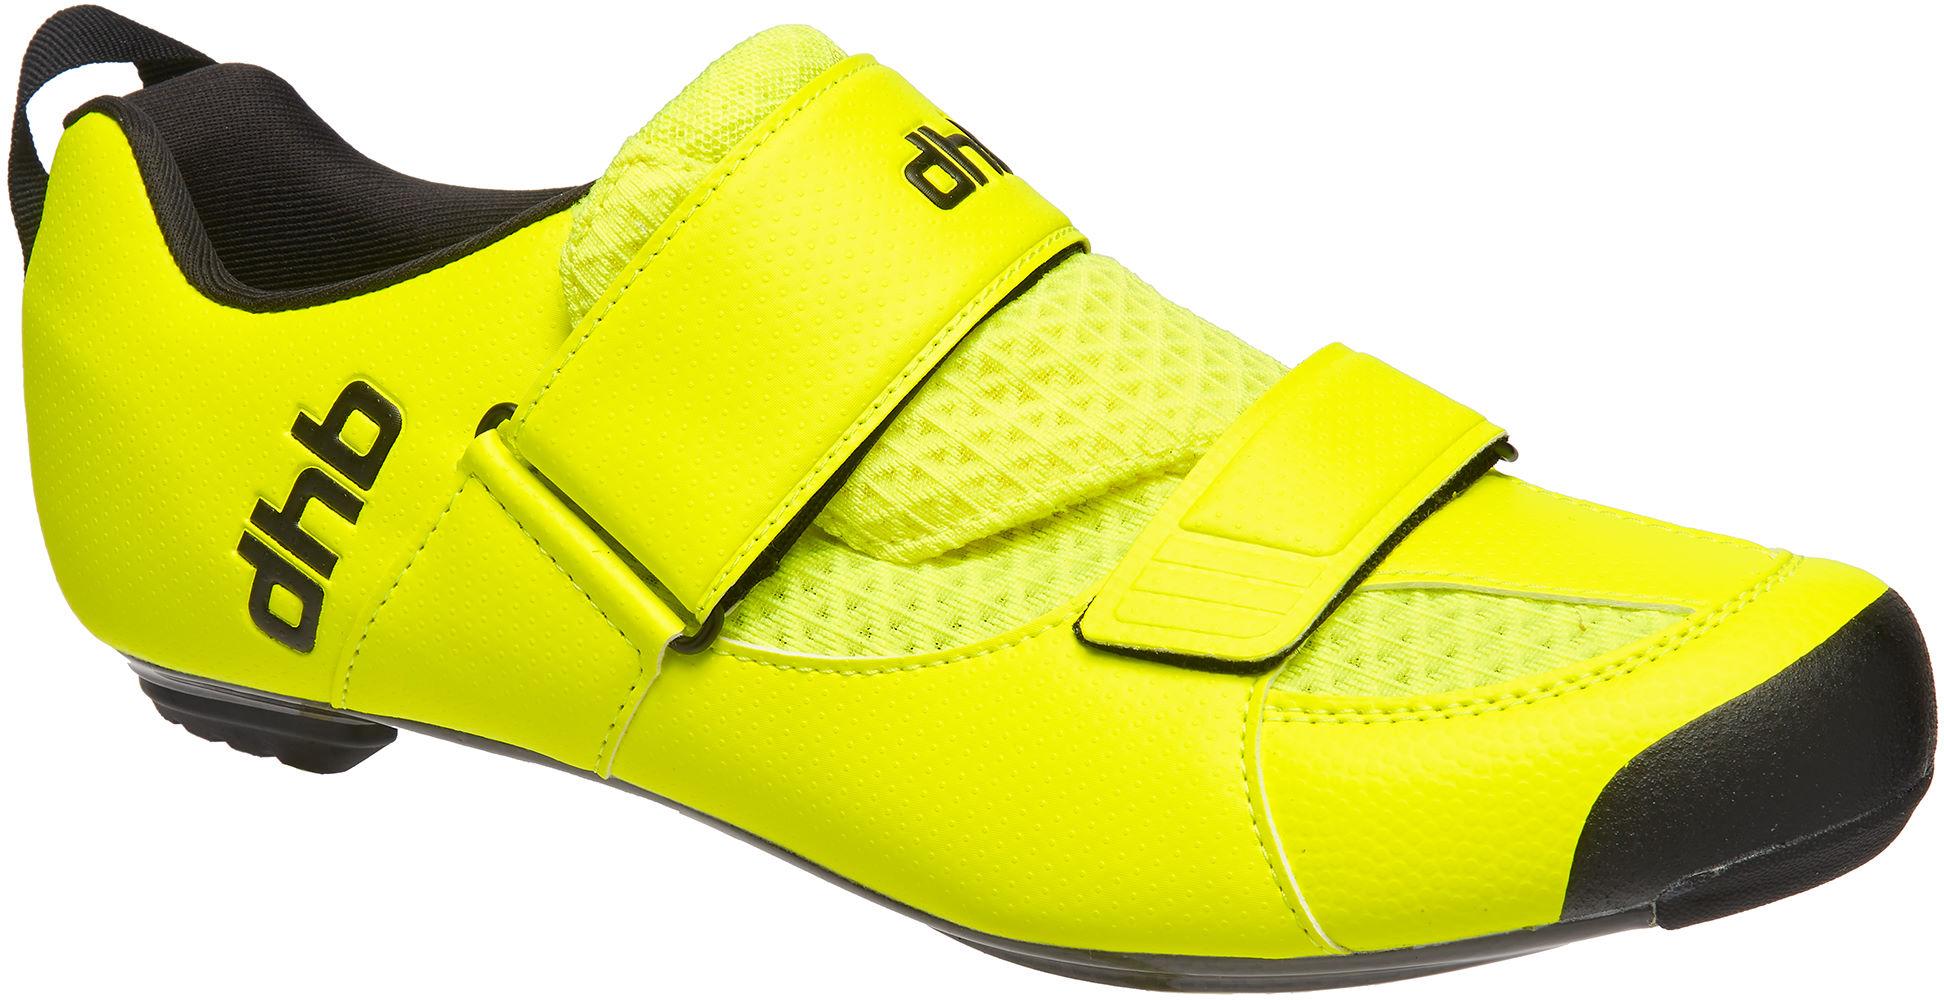 Dhb Trinity Carbon Tri Shoe - Fluro Yellow